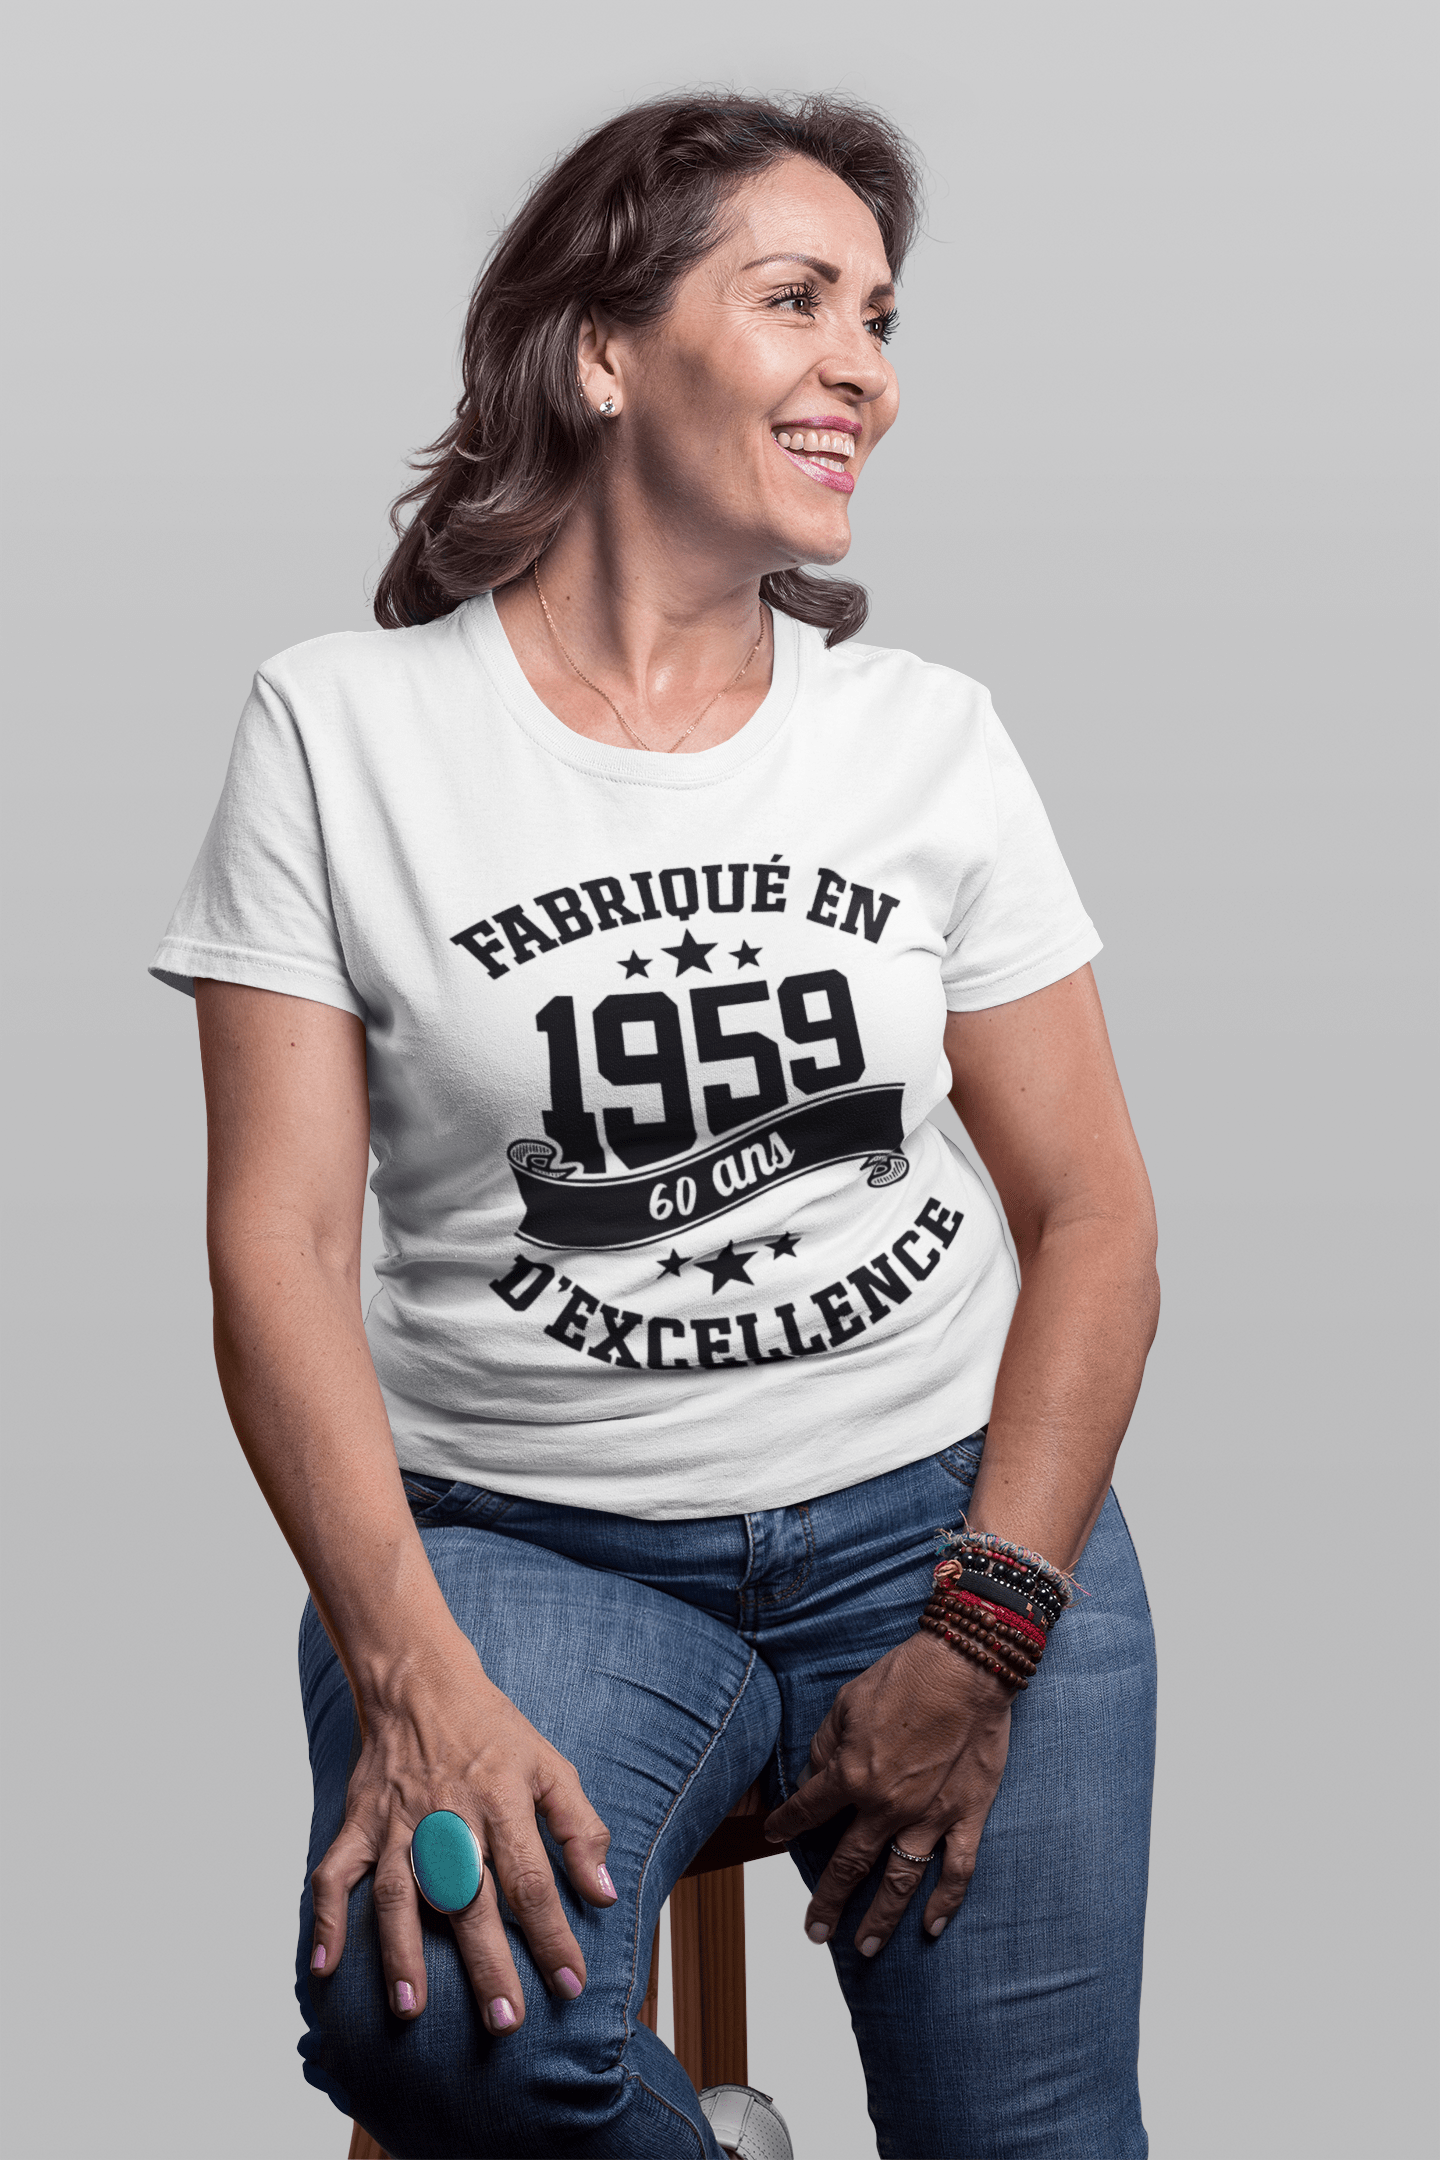 Ultrabasic - Tee-Shirt Femme col Rond Décolleté Fabriqué en 1959, 60 Ans d'être Génial T-Shirt